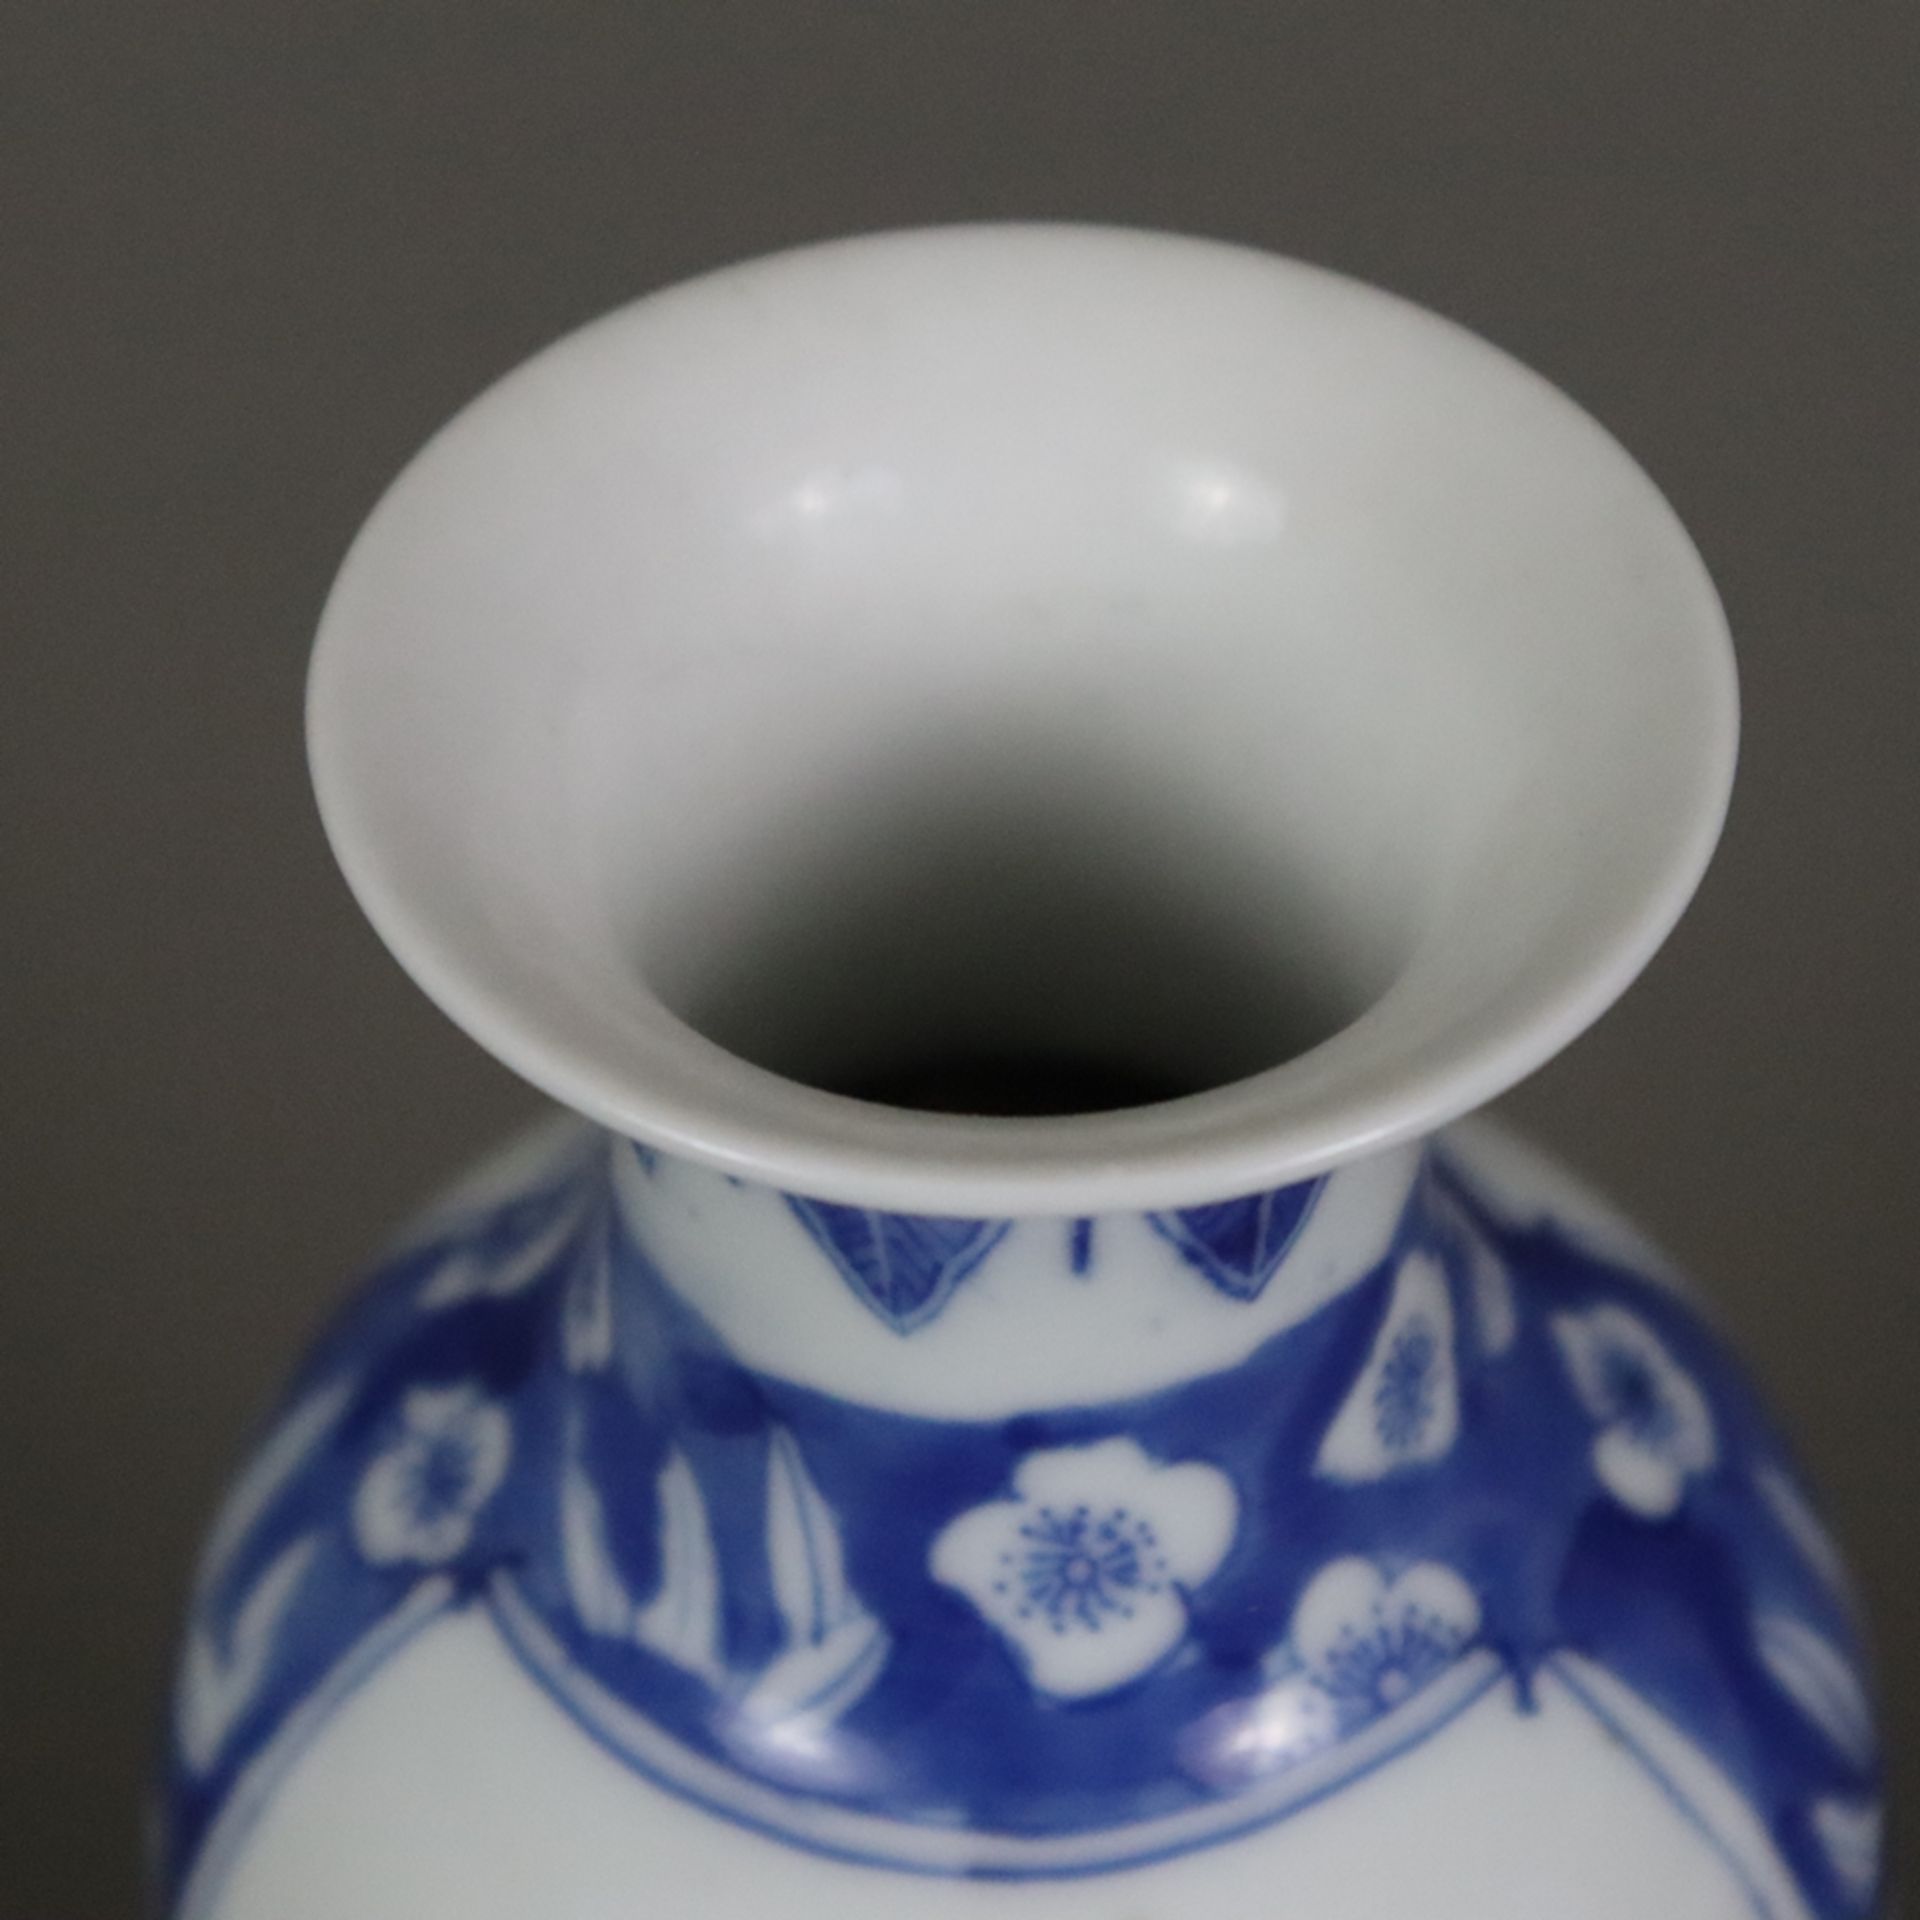 Blau-weiße Balustervase - China 20.Jh., dekoriert in Unterglasurblau mit Pflaumenblüten über gebors - Bild 3 aus 8